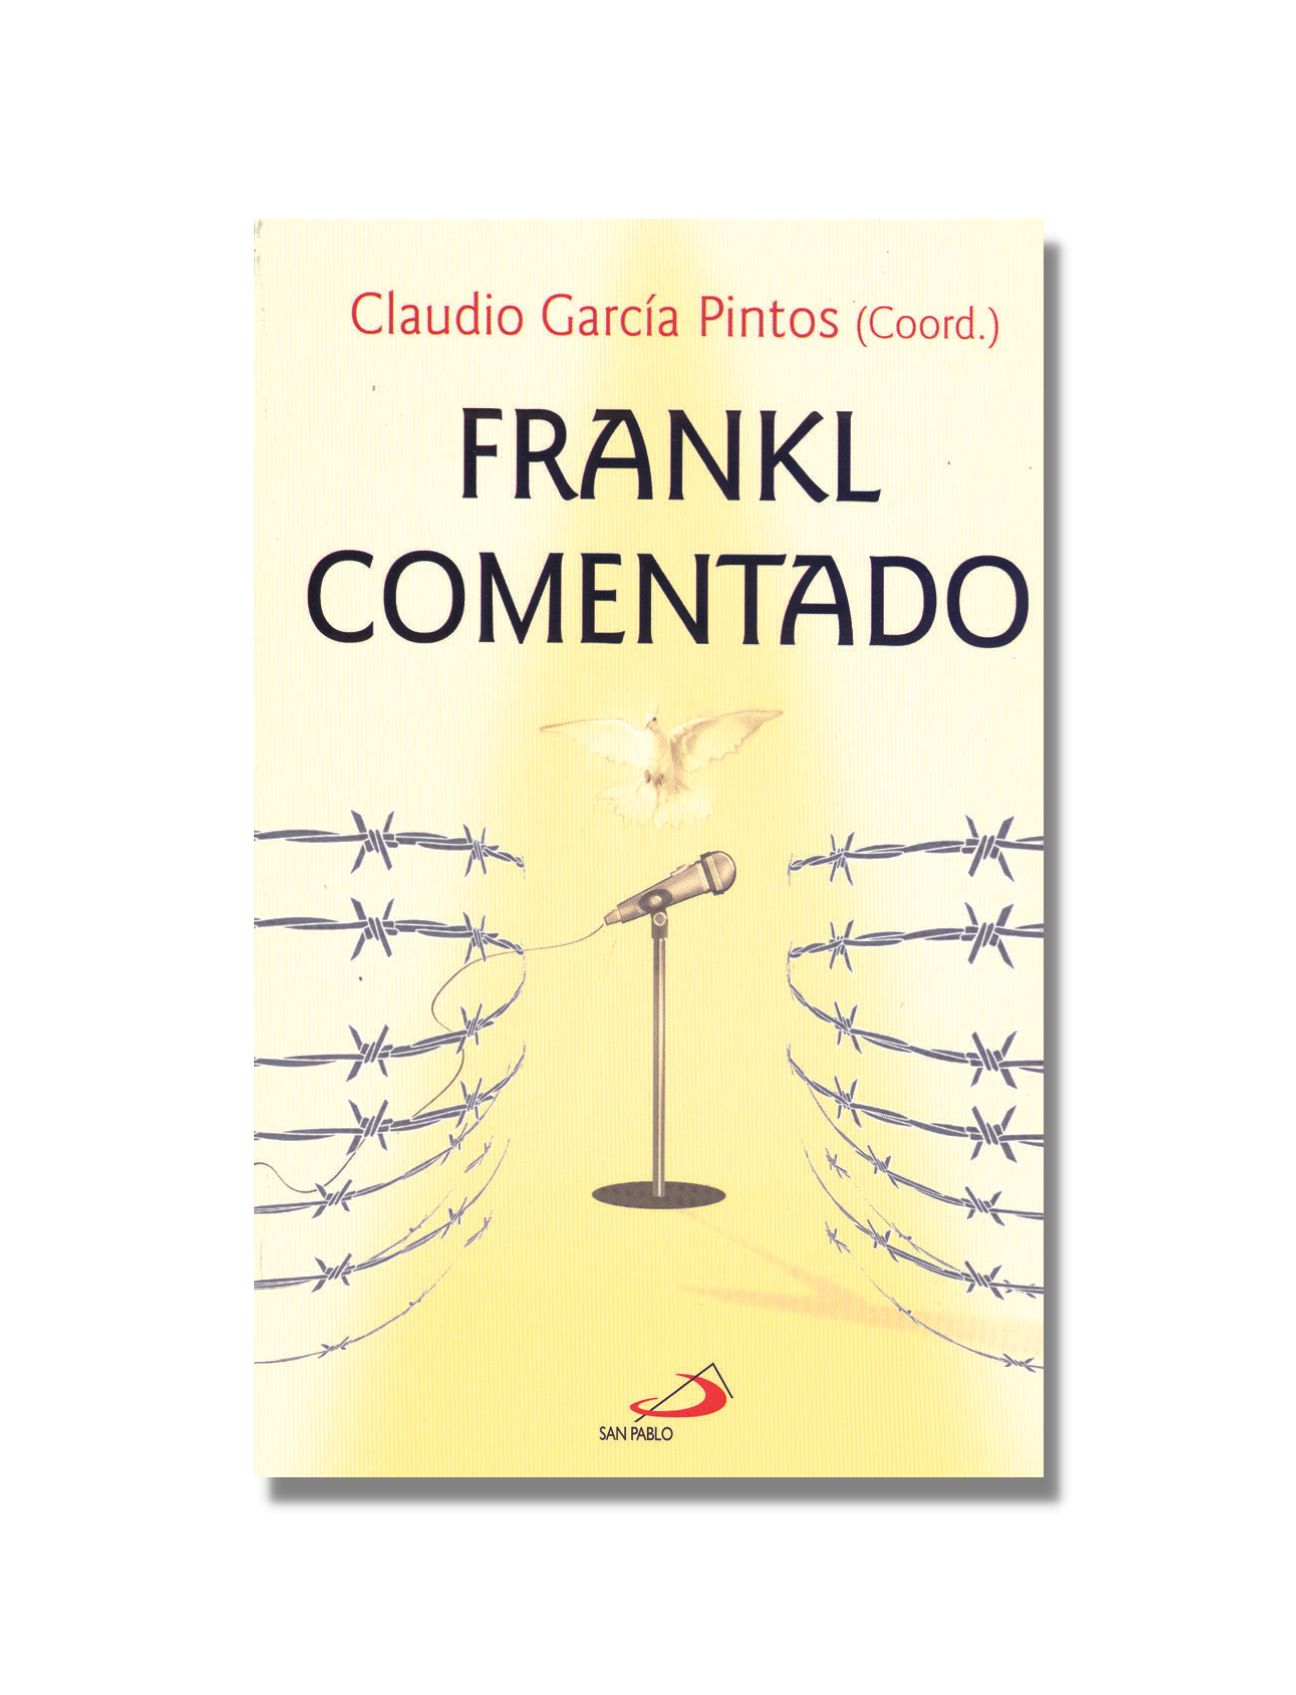 FRANKL COMENTADO